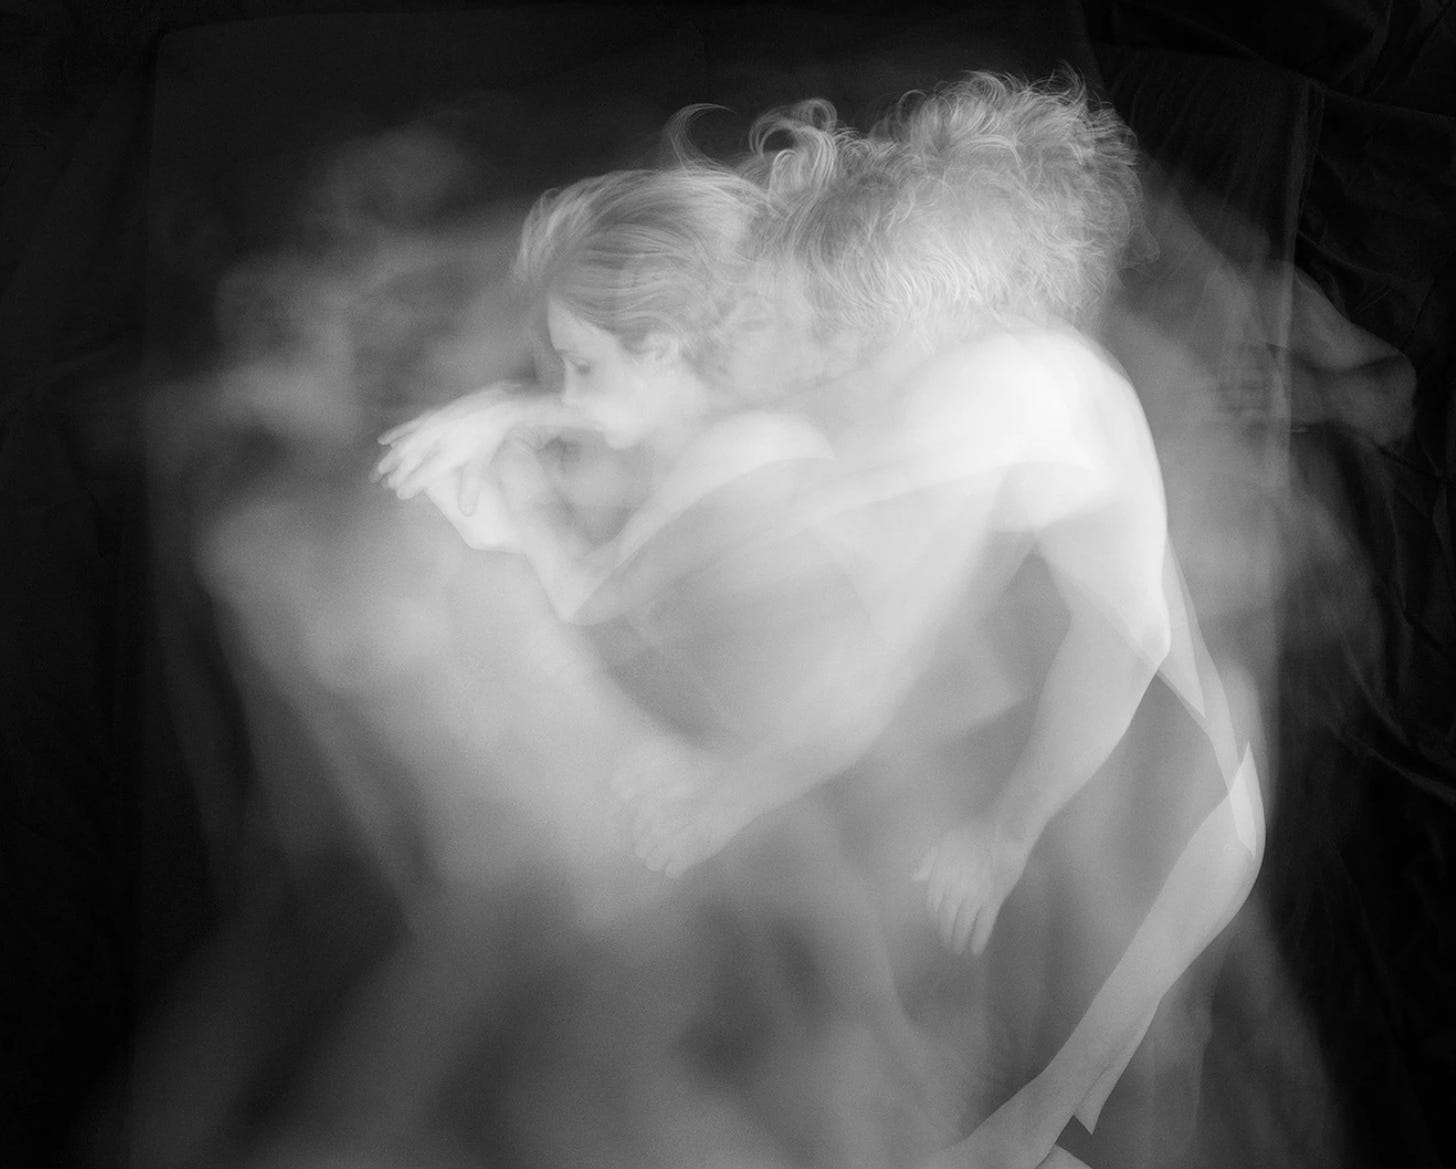 Foto preta e branca com um casal dormindo nu com sobreposições dando a impressão de ser uma imagem de sonho